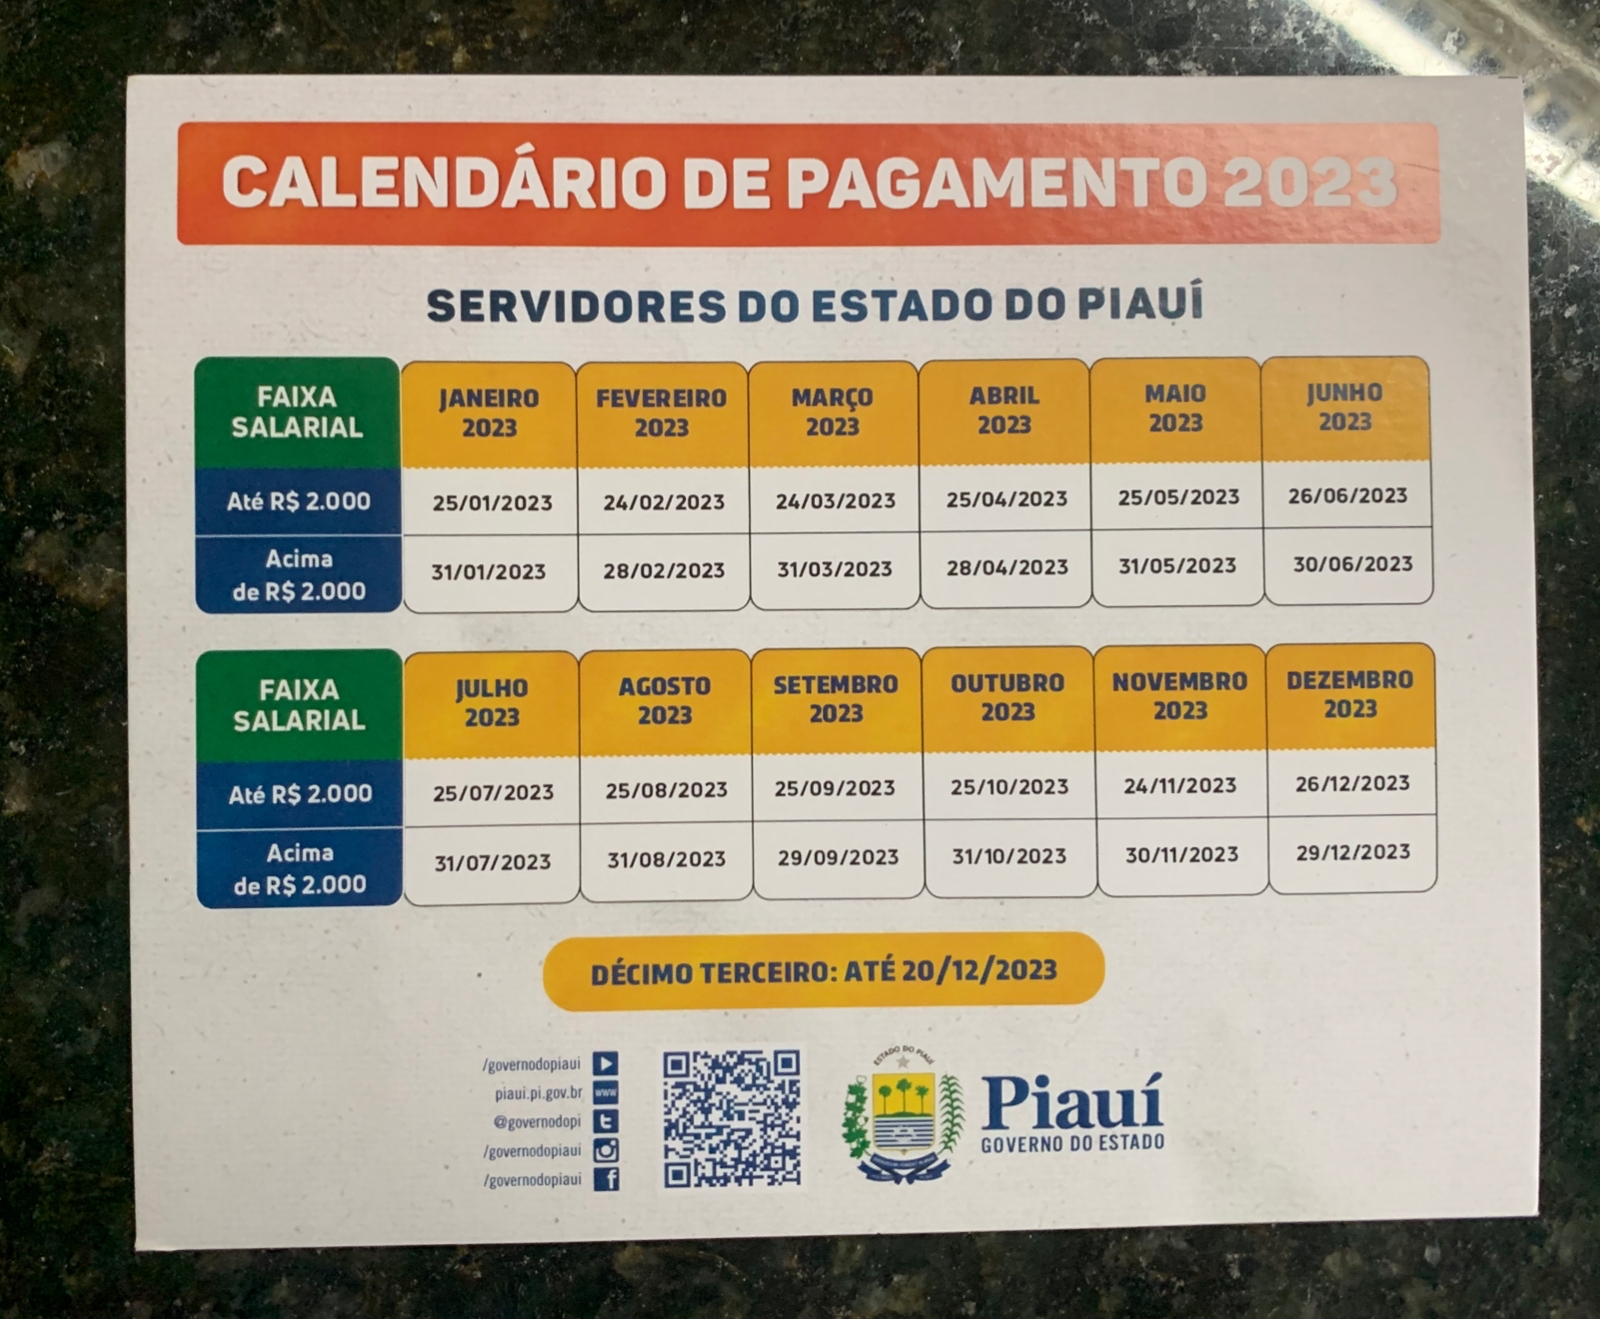 180graus divulga tabela completa com todos os jogos da copa; confira -  180graus - O Maior Portal do Piauí